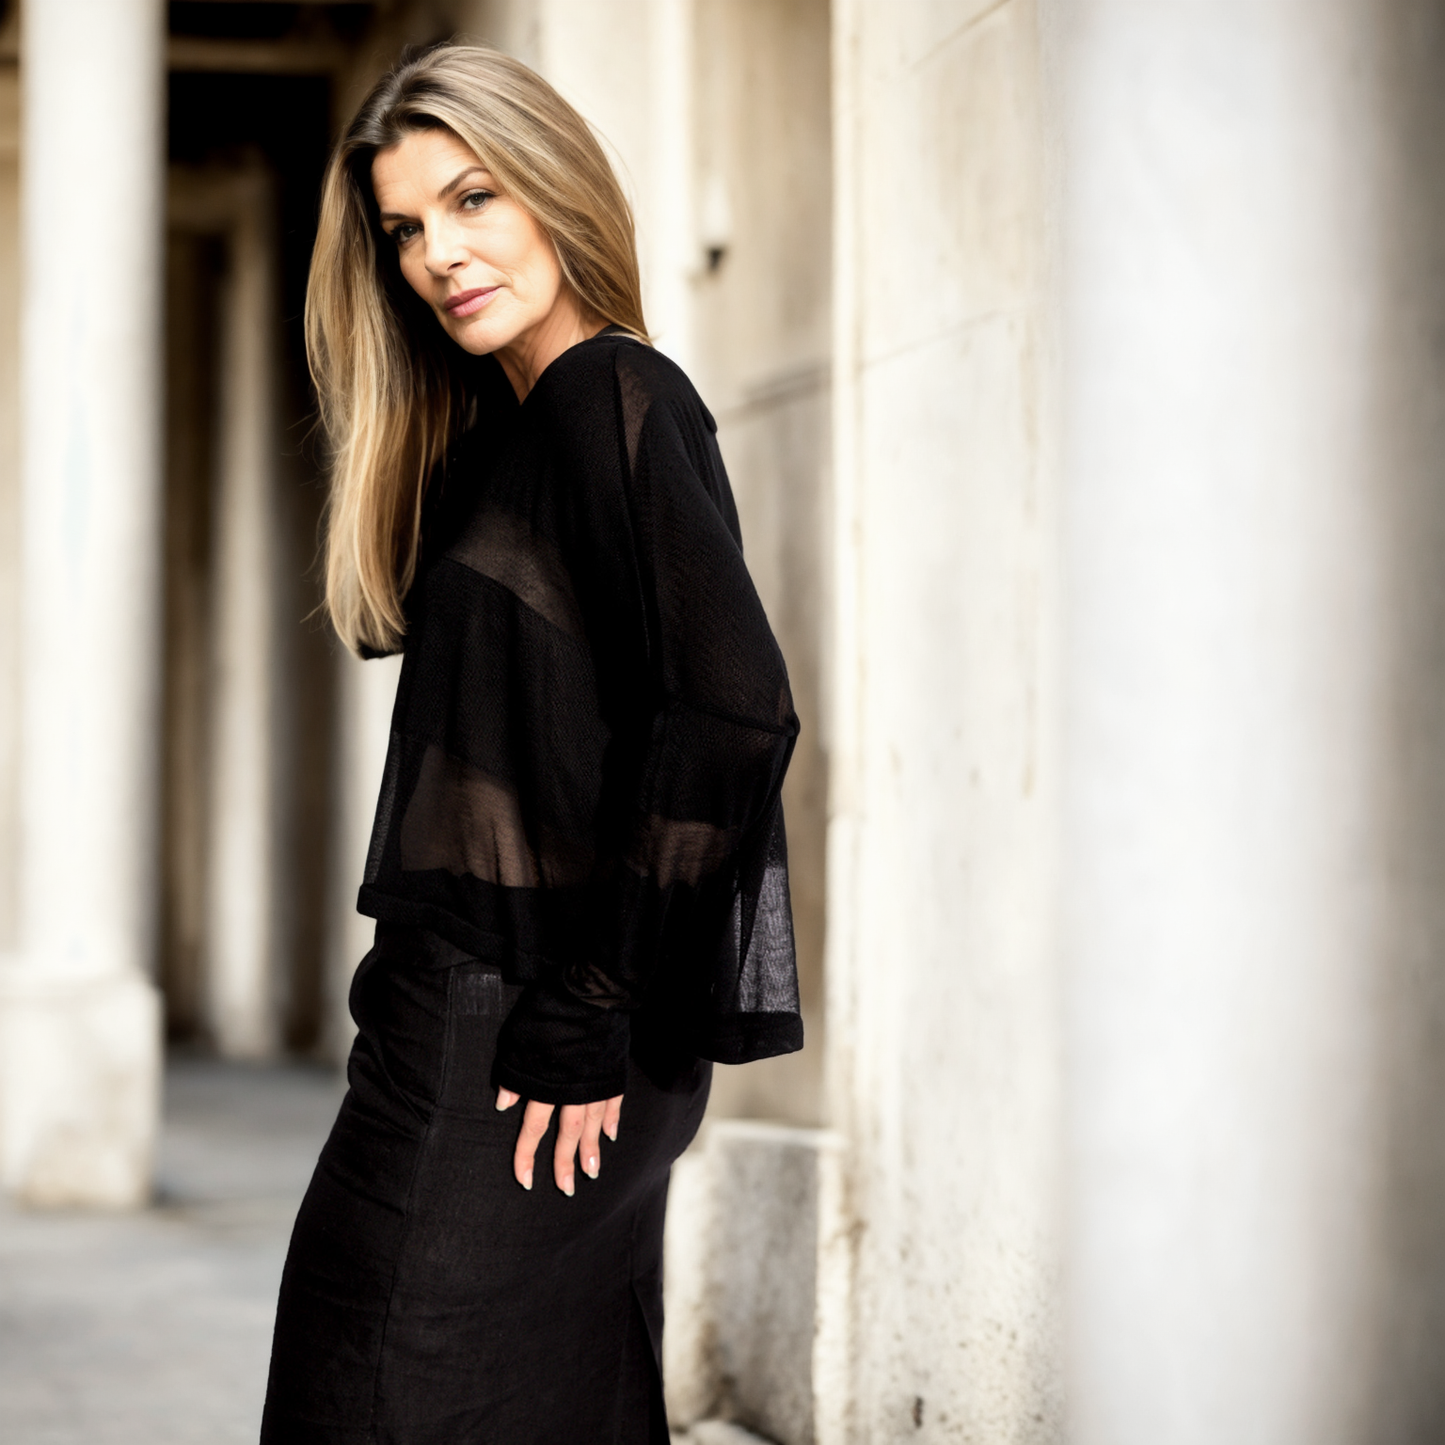 Giselle - Blusa de tricot listrada em preto com transparencias